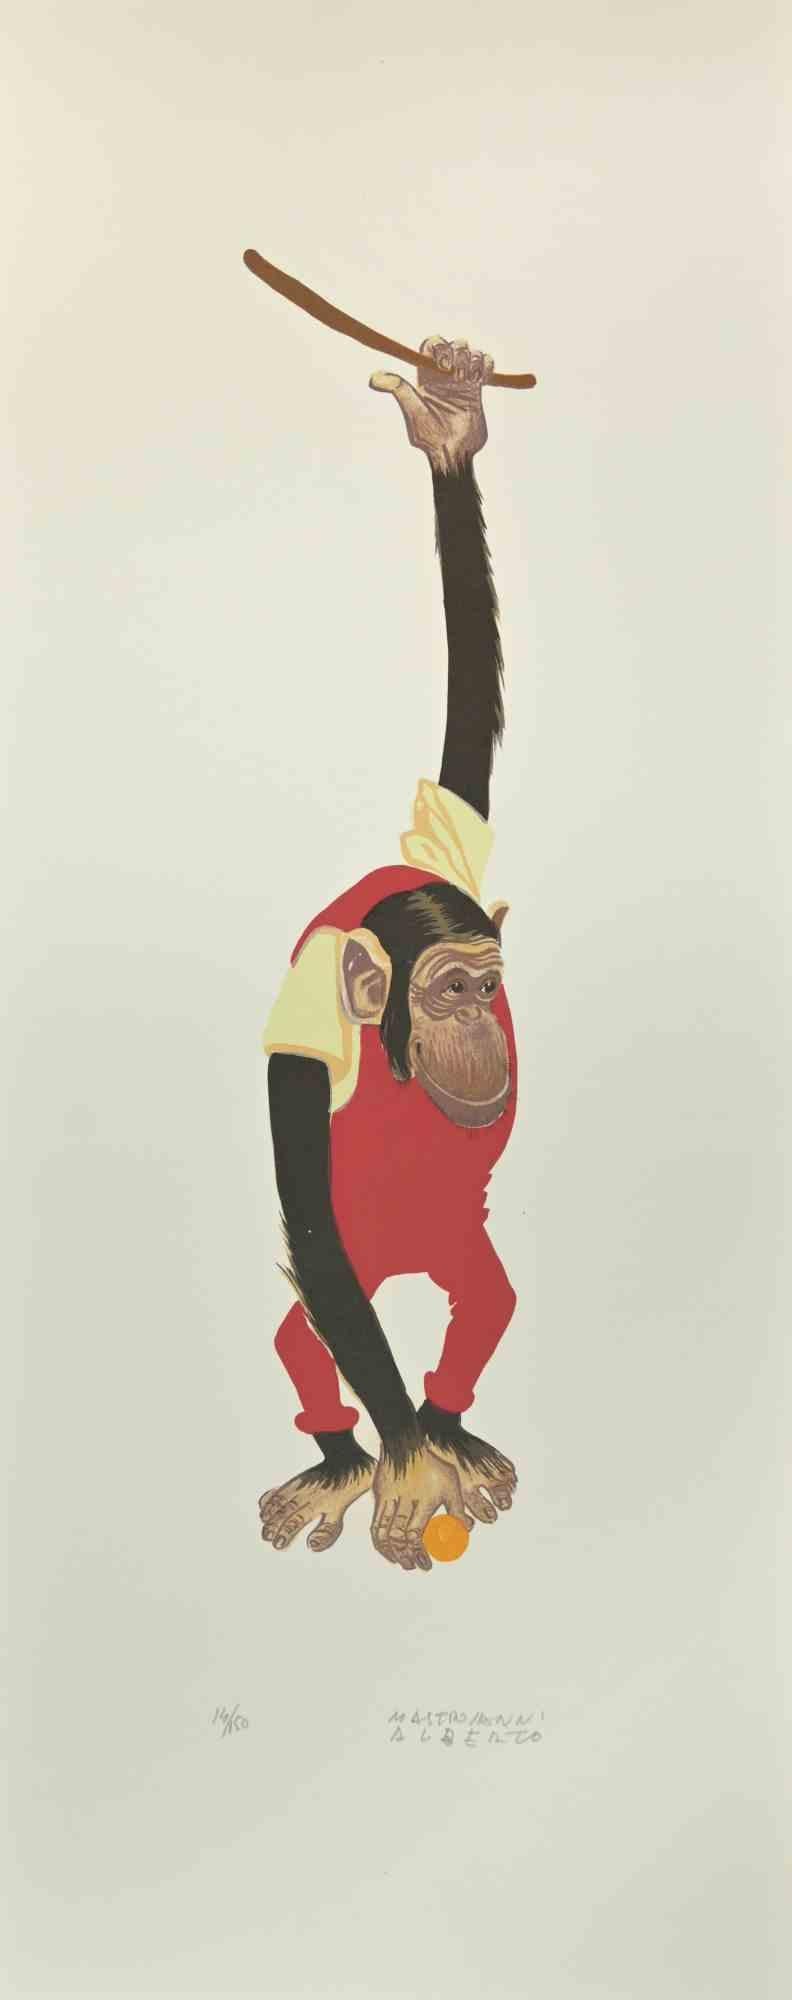 Monkey est une lithographie réalisée par Alberto Mastroianni dans les années 1970.

Signé à la main dans la marge inférieure droite. Numéroté au crayon dans la marge inférieure. Édition de 150 exemplaires.

Les efforts de l'artiste indiquent